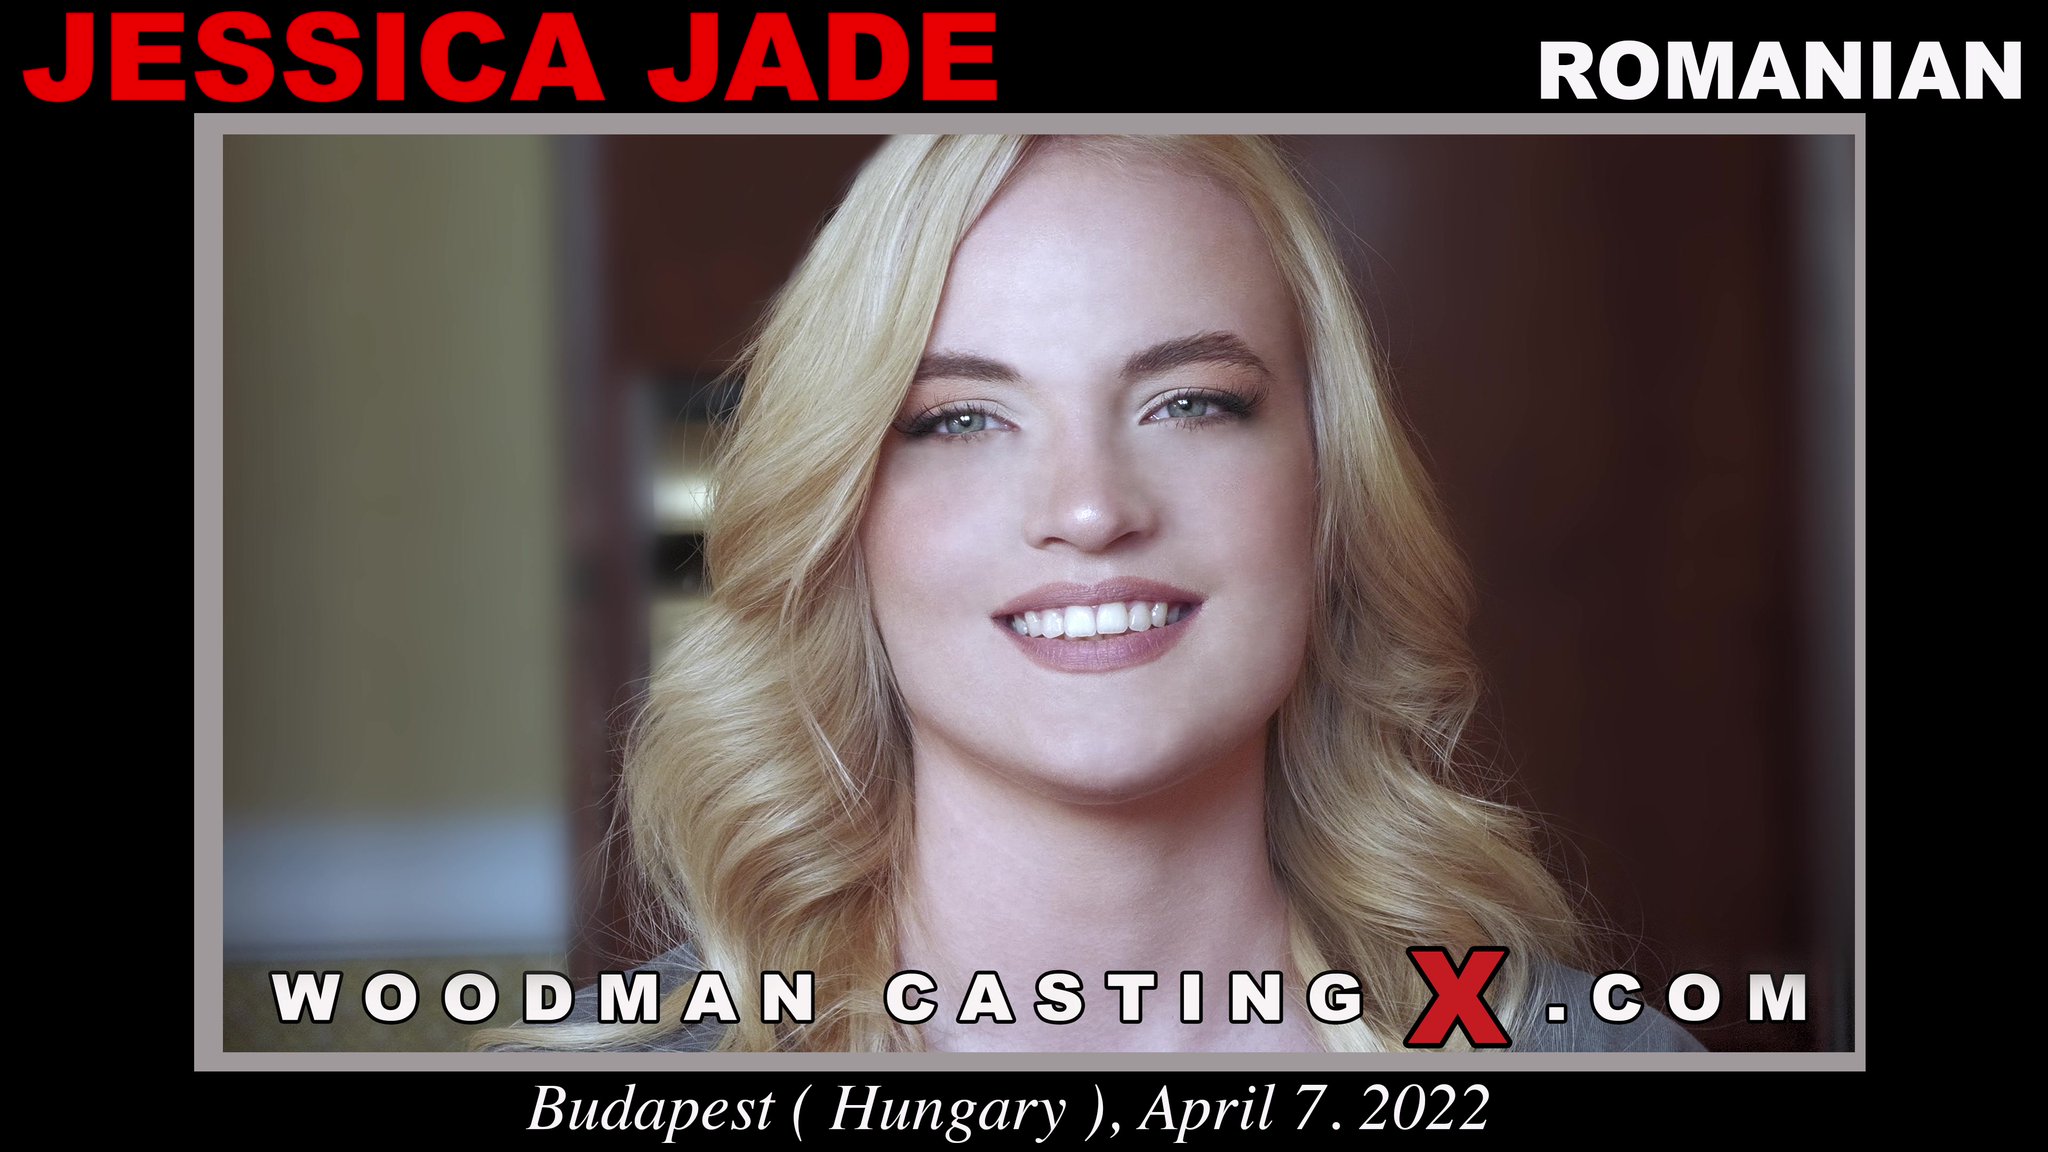 Tw Pornstars Woodman Casting X Twitter New Video Jessica Jade 8 